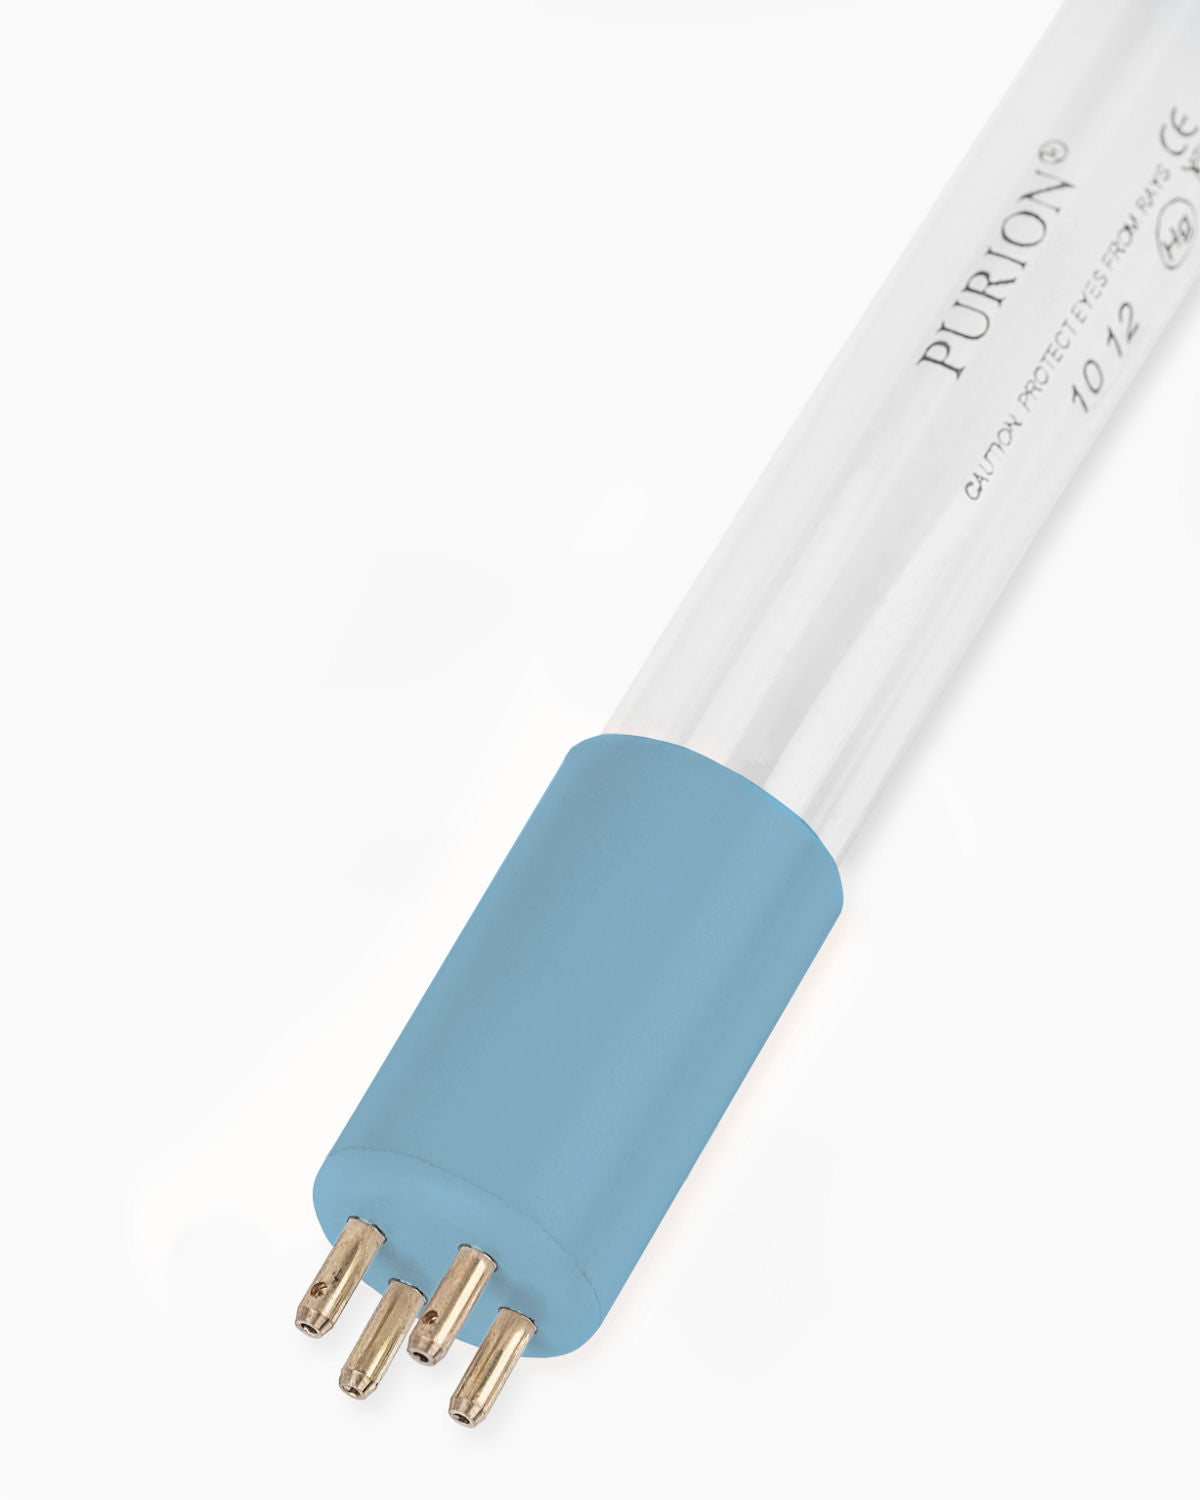 Eine blaue PURION 2001 PVC-U Basic UV-C-Desinfektions-Lichtröhre auf weißem Hintergrund. (Marke: PURION GmbH)